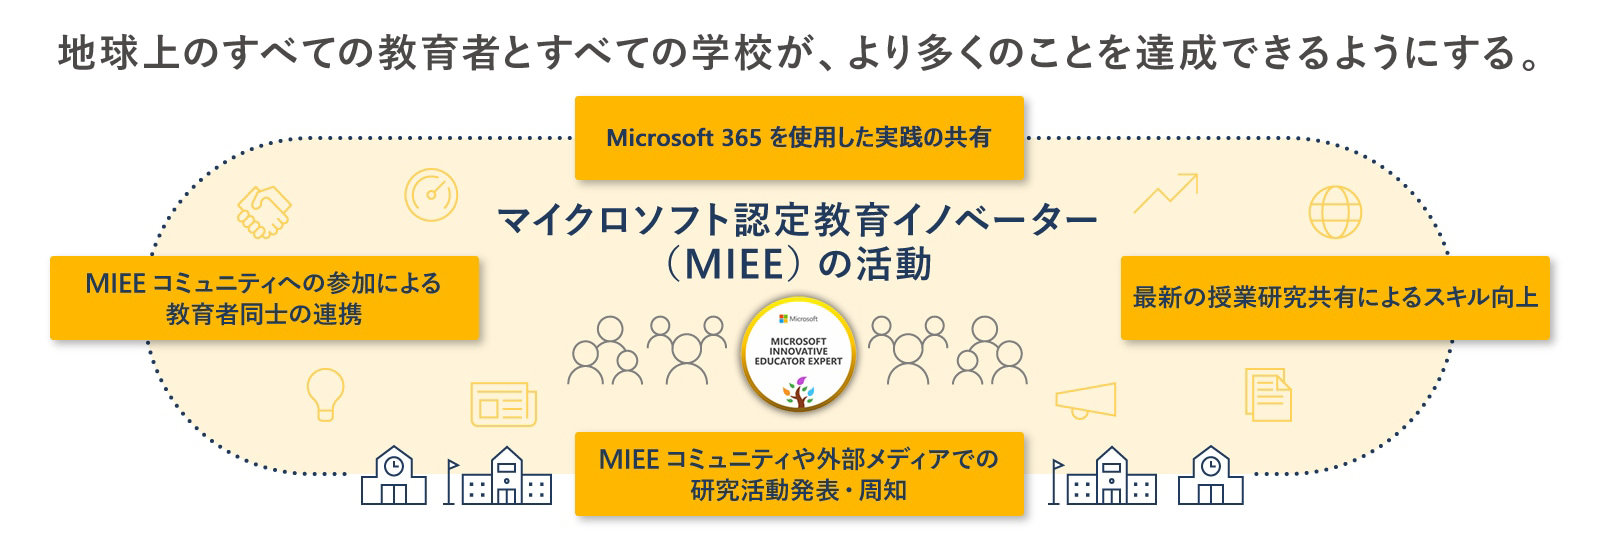 地球上のすべての教育者とすべての学校が、より多くのことを達成できるようにする。  MIEE コミュニティへの参加による 教育者同士の連携  Microsoft 365 を使用した実践の共有  最新の授業研究共有によるスキル向上  MIEE コミュニティや外部メディアでの 研究活動発表·周知  マイクロソフト認定教育イノベーター (MIEE)の活動 MICROSOFT INNOVATIVE EDUCATOR EXPERT